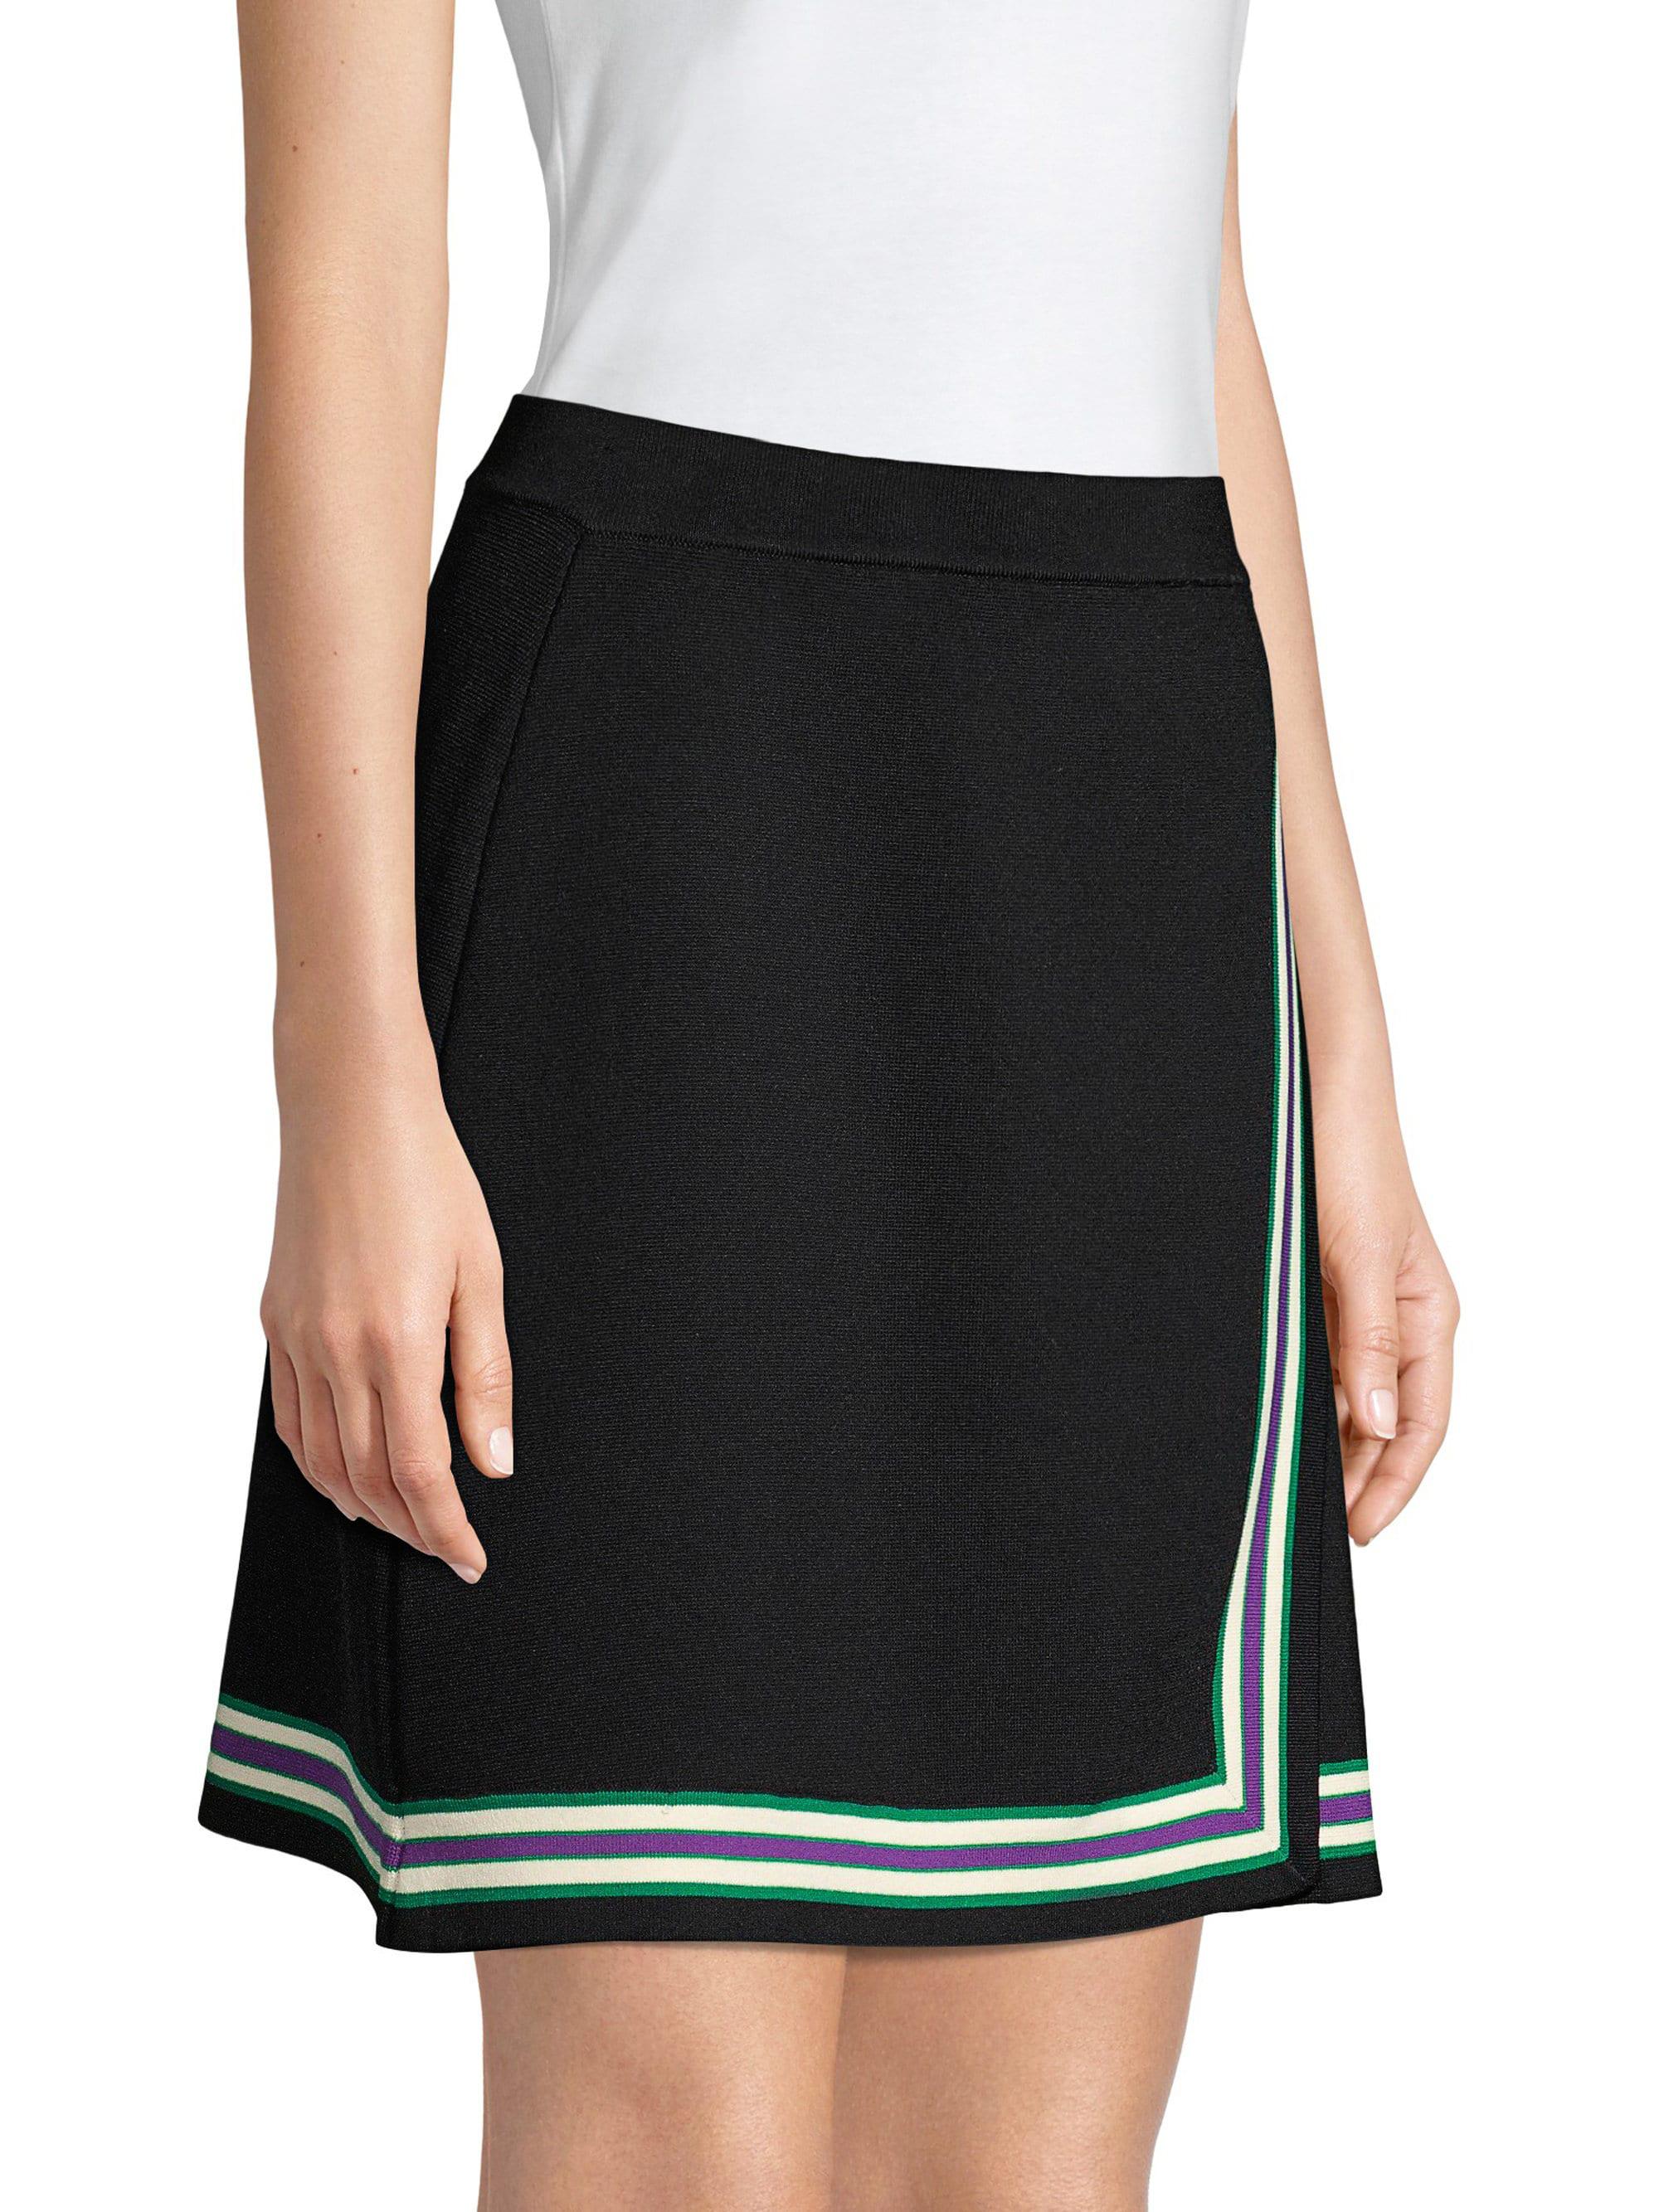 Sandro Women's Elodie Striped Crossover Skirt Noir